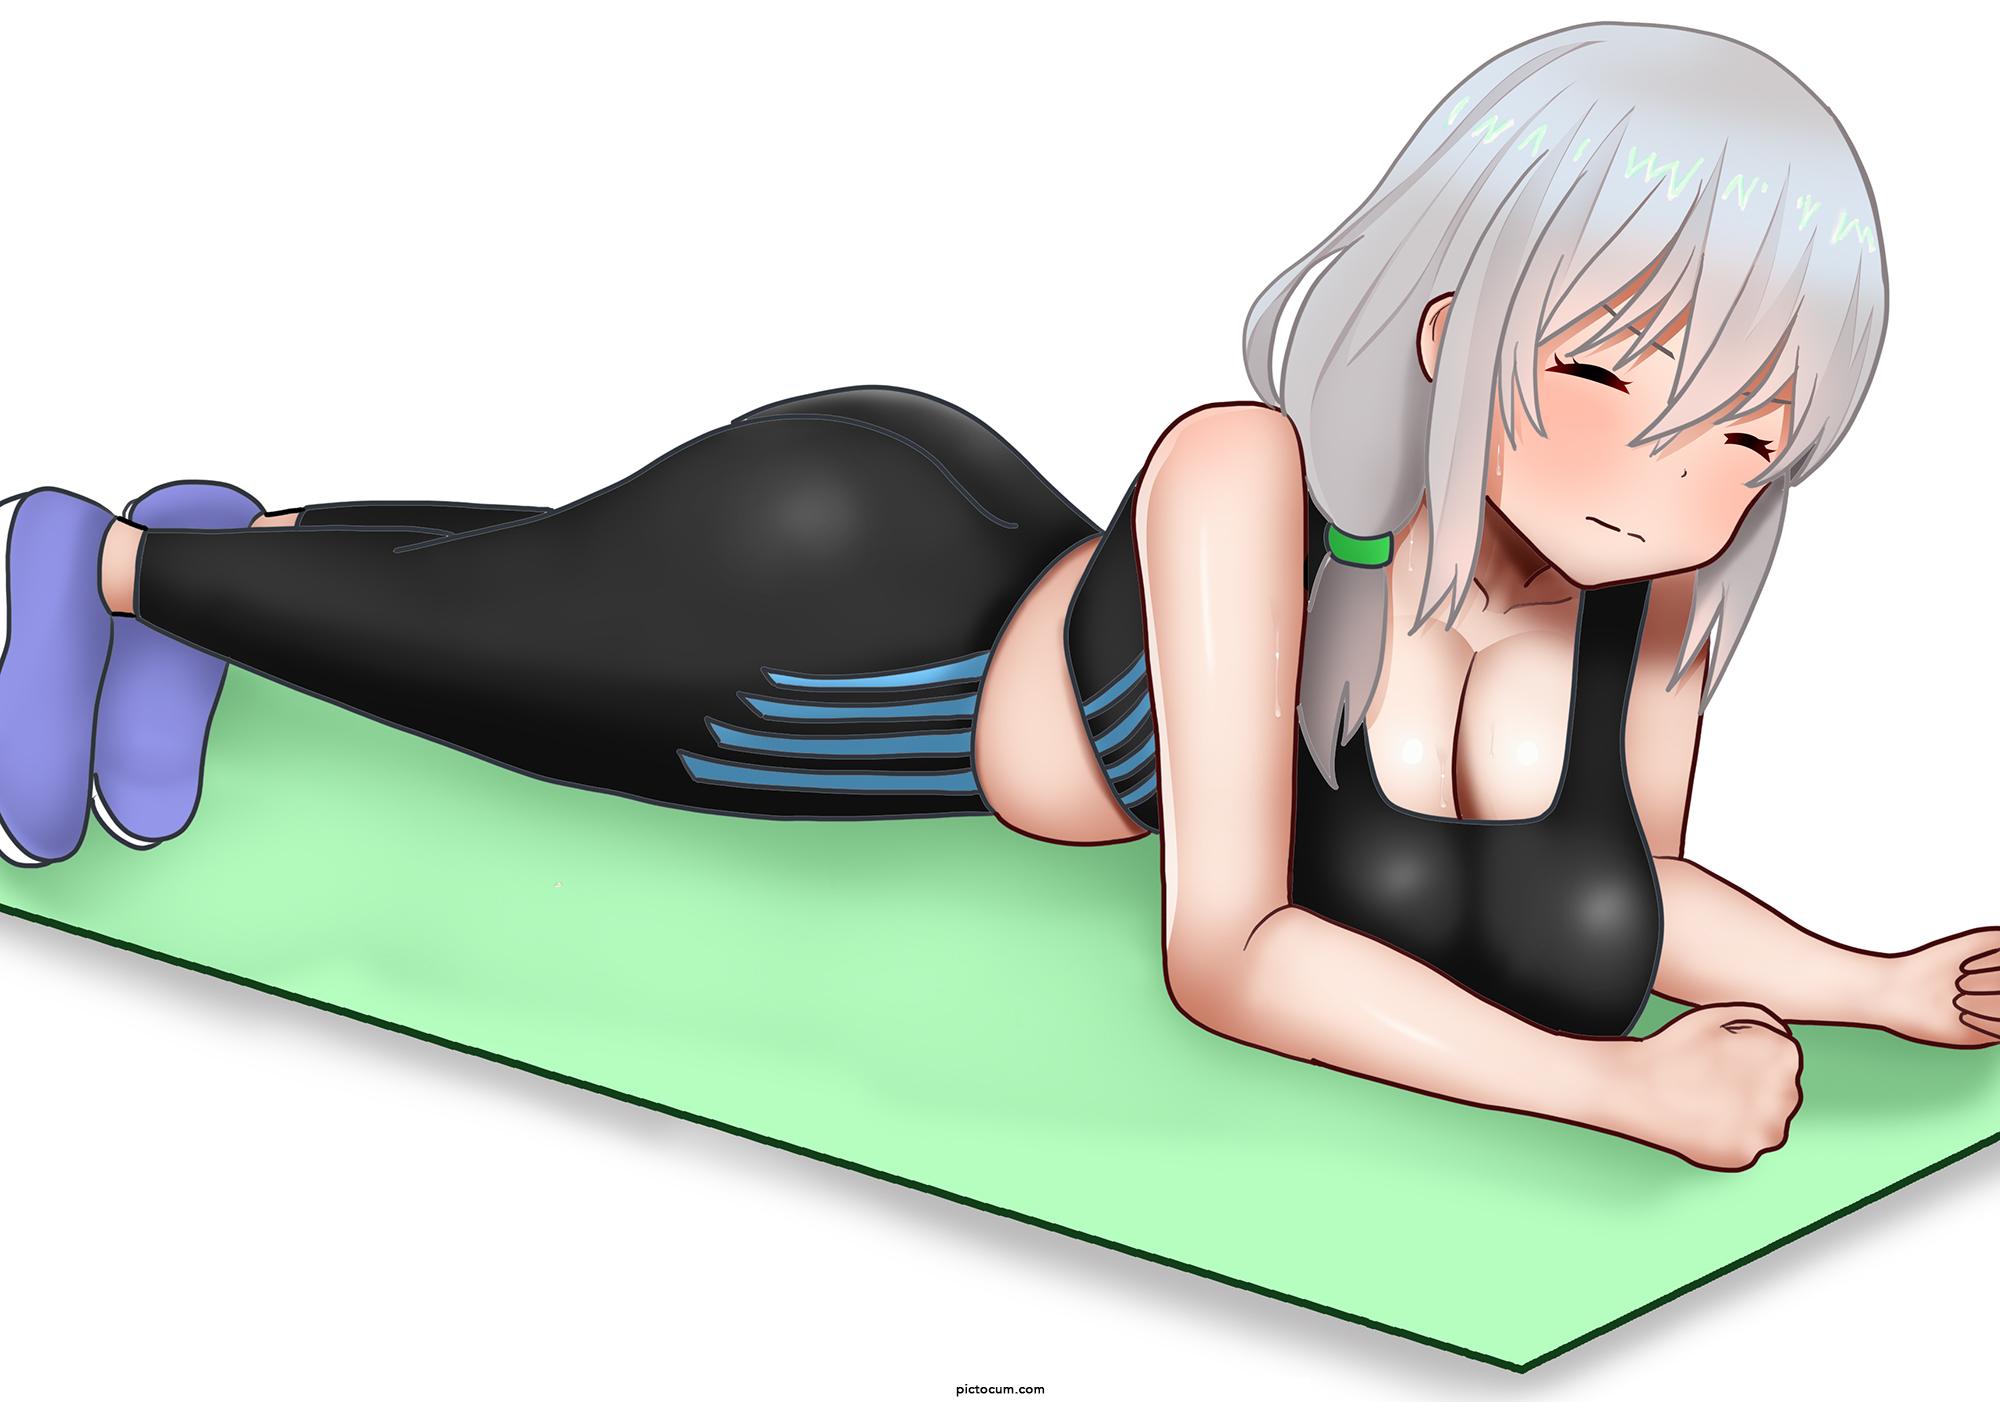 Tsuki doing planks